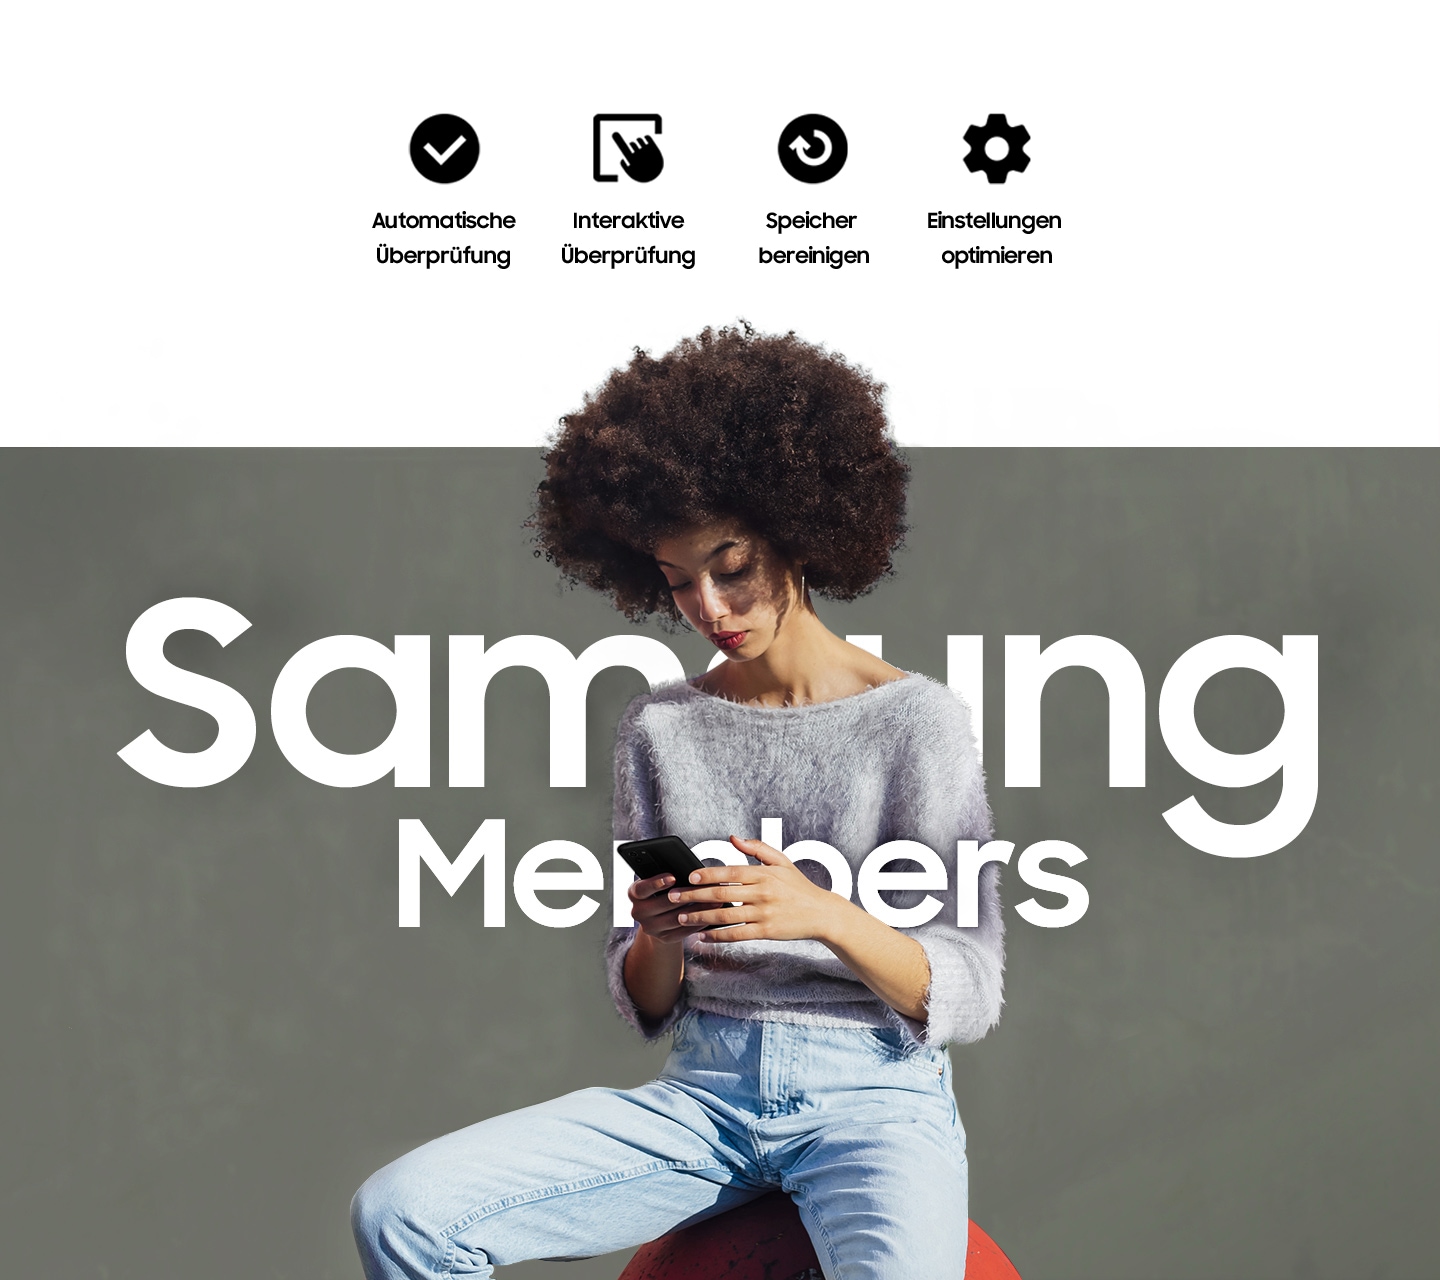 Eine Frau sitzt draußen und benutzt ihr Smartphone. Über ihr ist der Text Samsung Members zu lesen. Darüber befinden sich vier Symbole für automatische Überprüfung, interaktive Überprüfungen, Speicher bereinigen und Einstellungen anpassen.